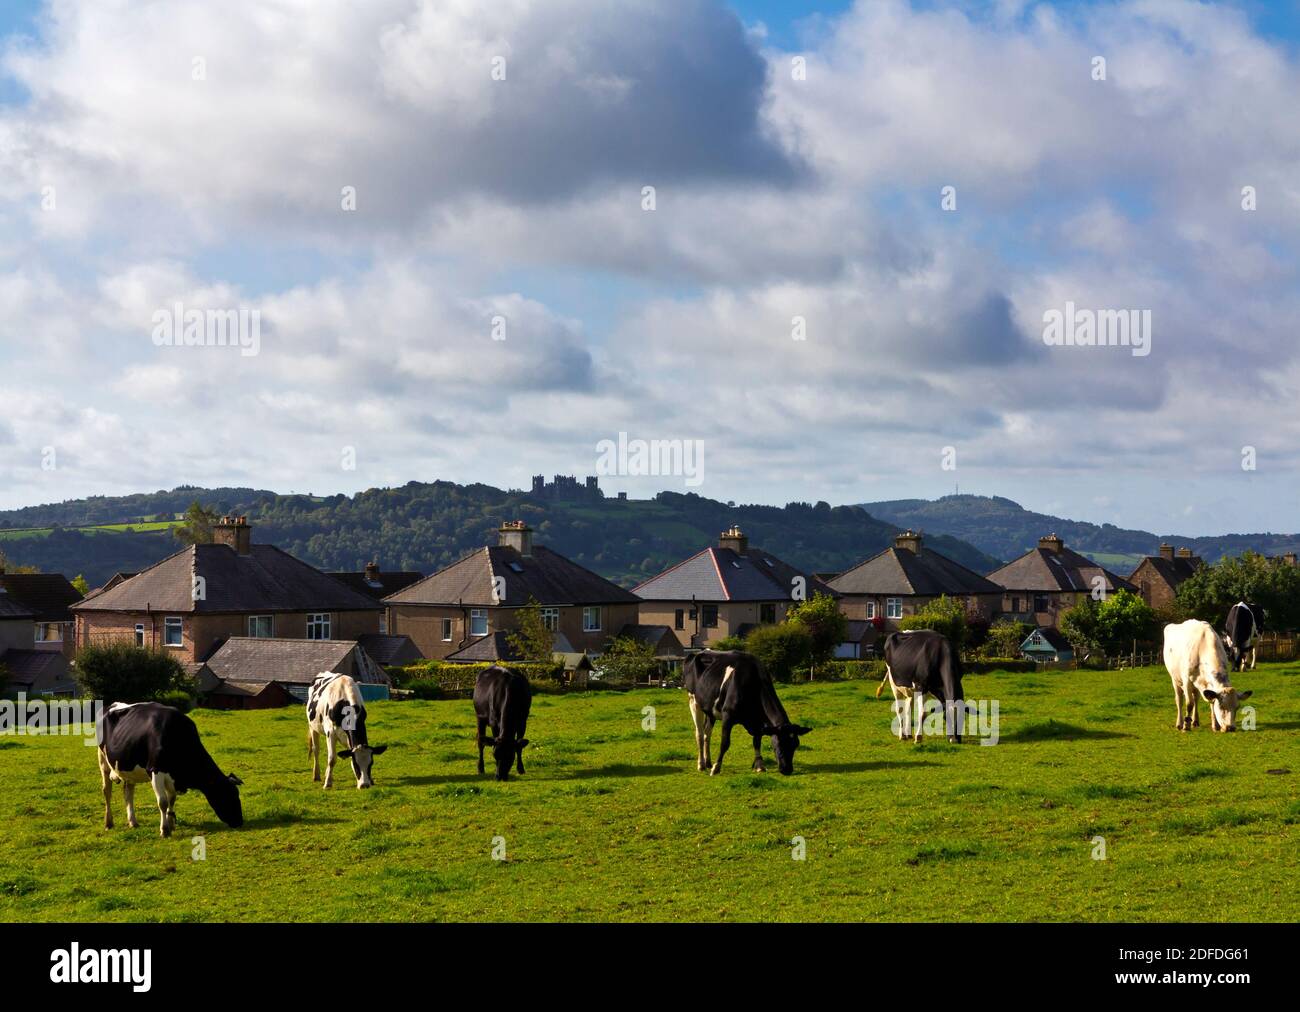 Rinder grasen neben Häusern in einem Feld neben Häusern in Matlock Derbyshire Peak District England mit Riber Castle auf Hügel im Hintergrund. Stockfoto